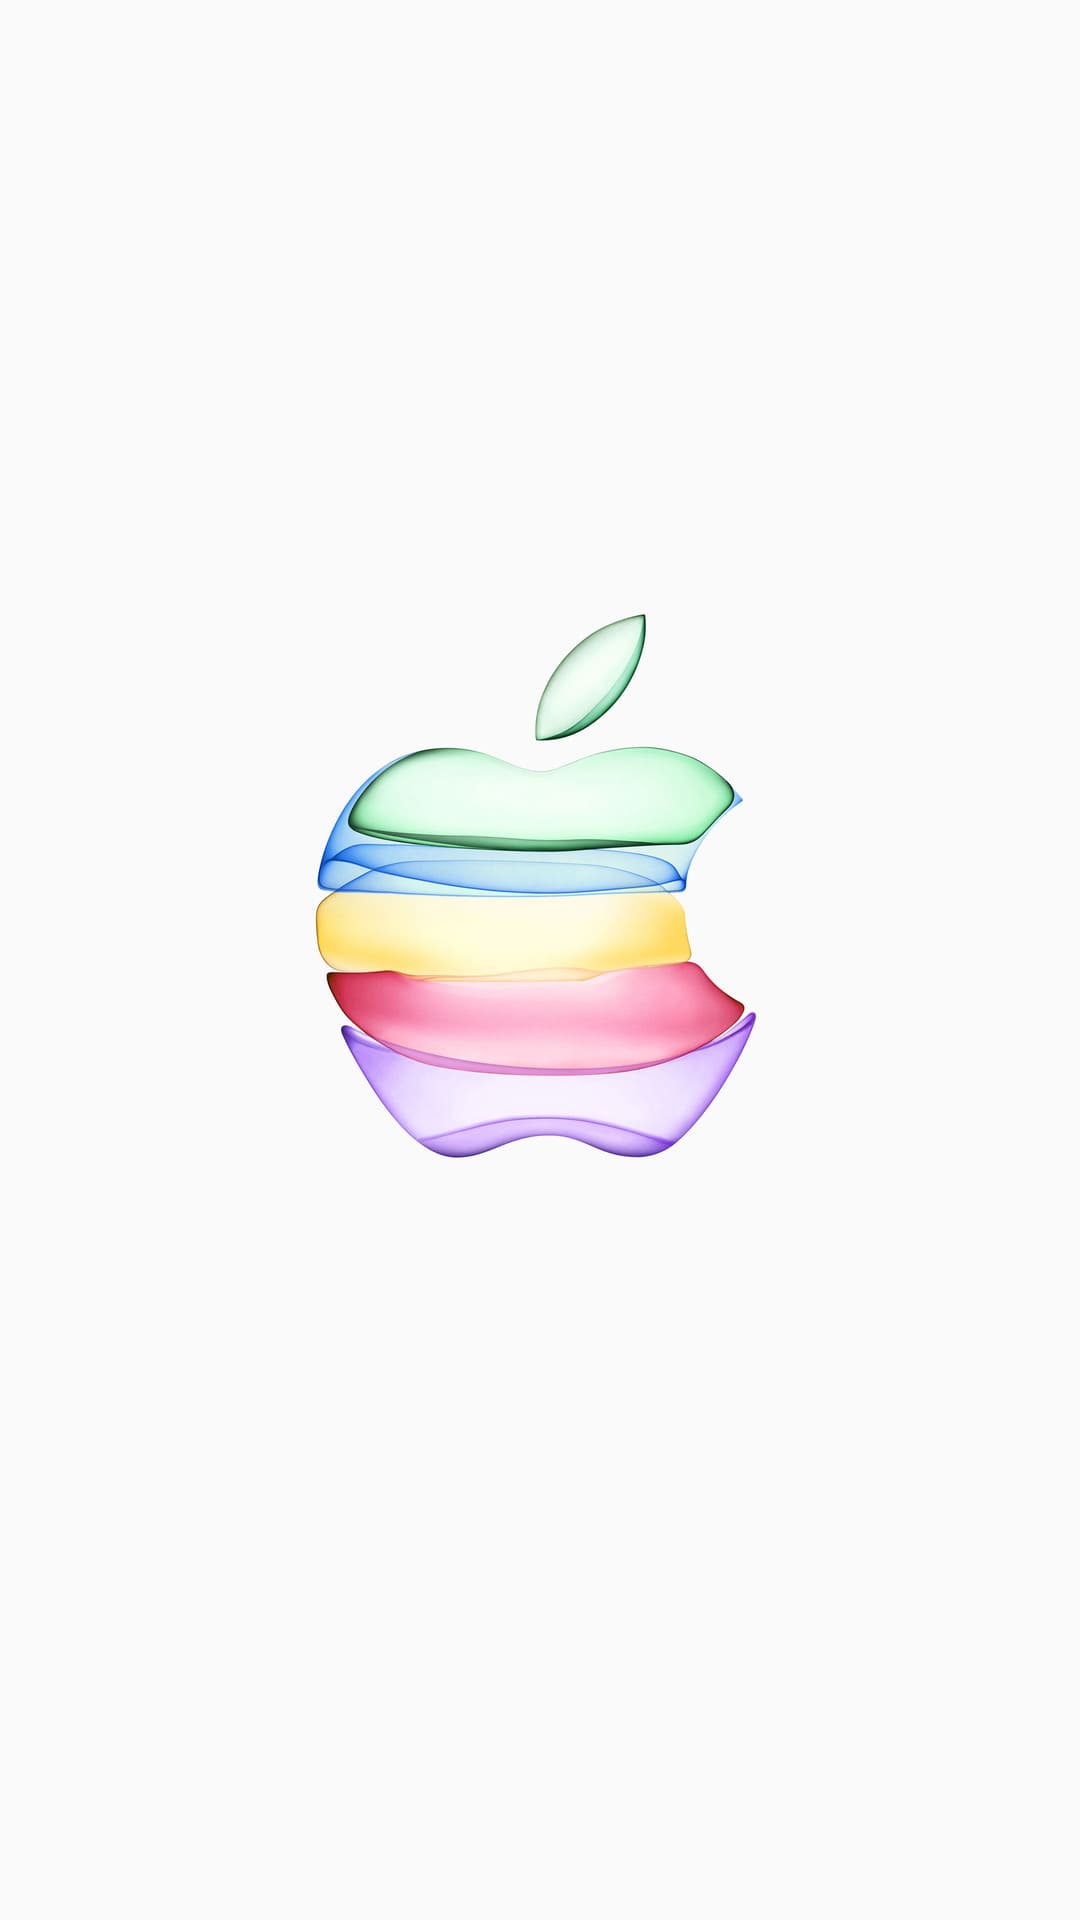 Apple Logo Wallpaper [ 4k + HD ]